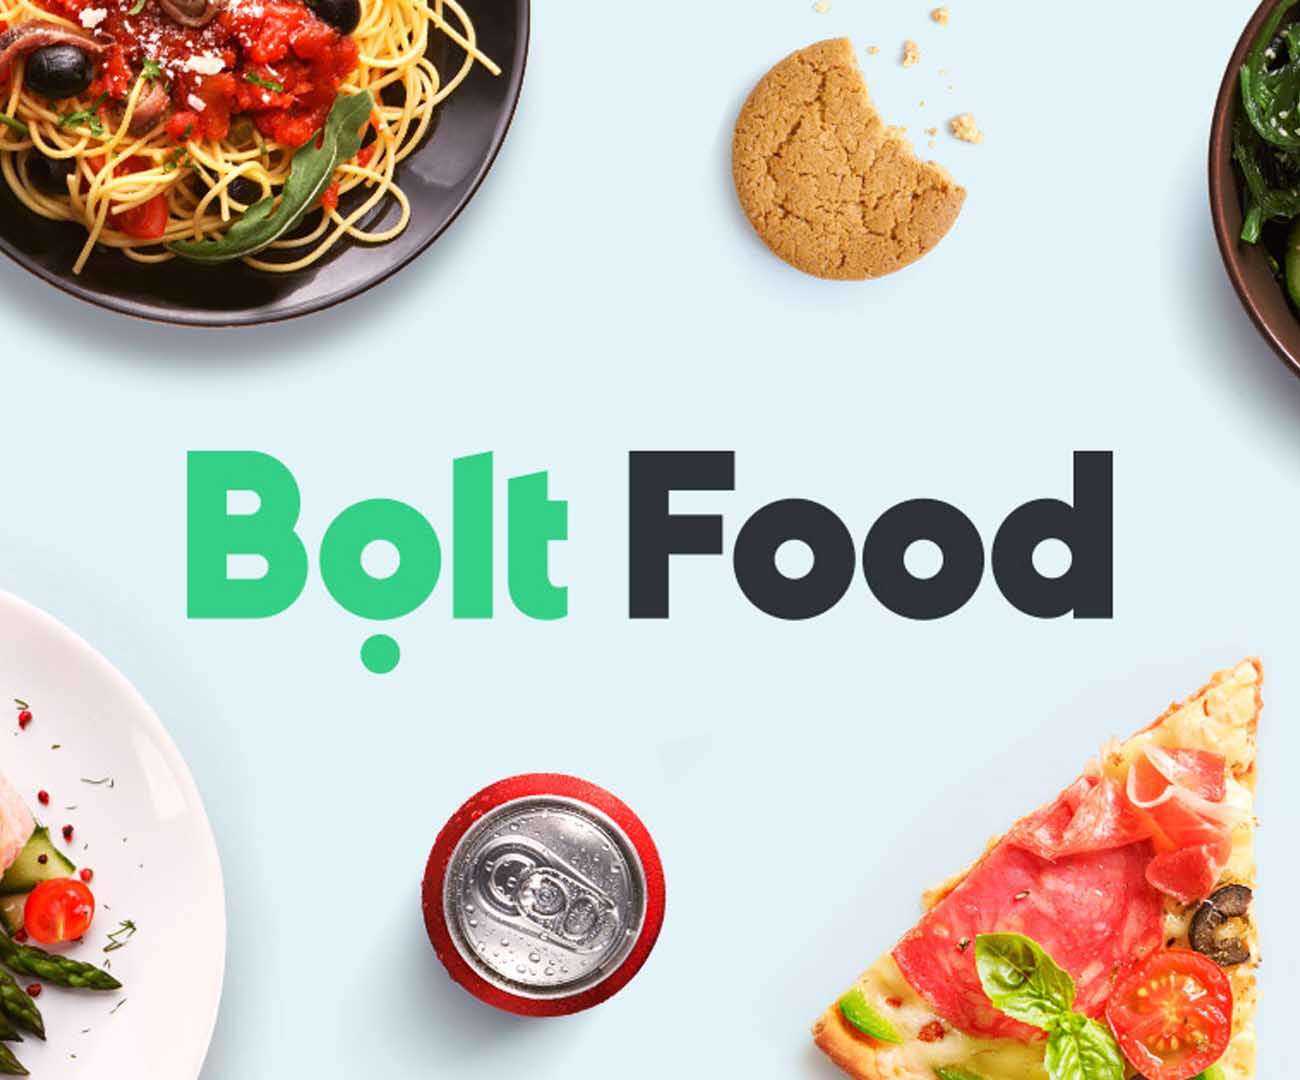 Bolt Food Promo Code Reddit